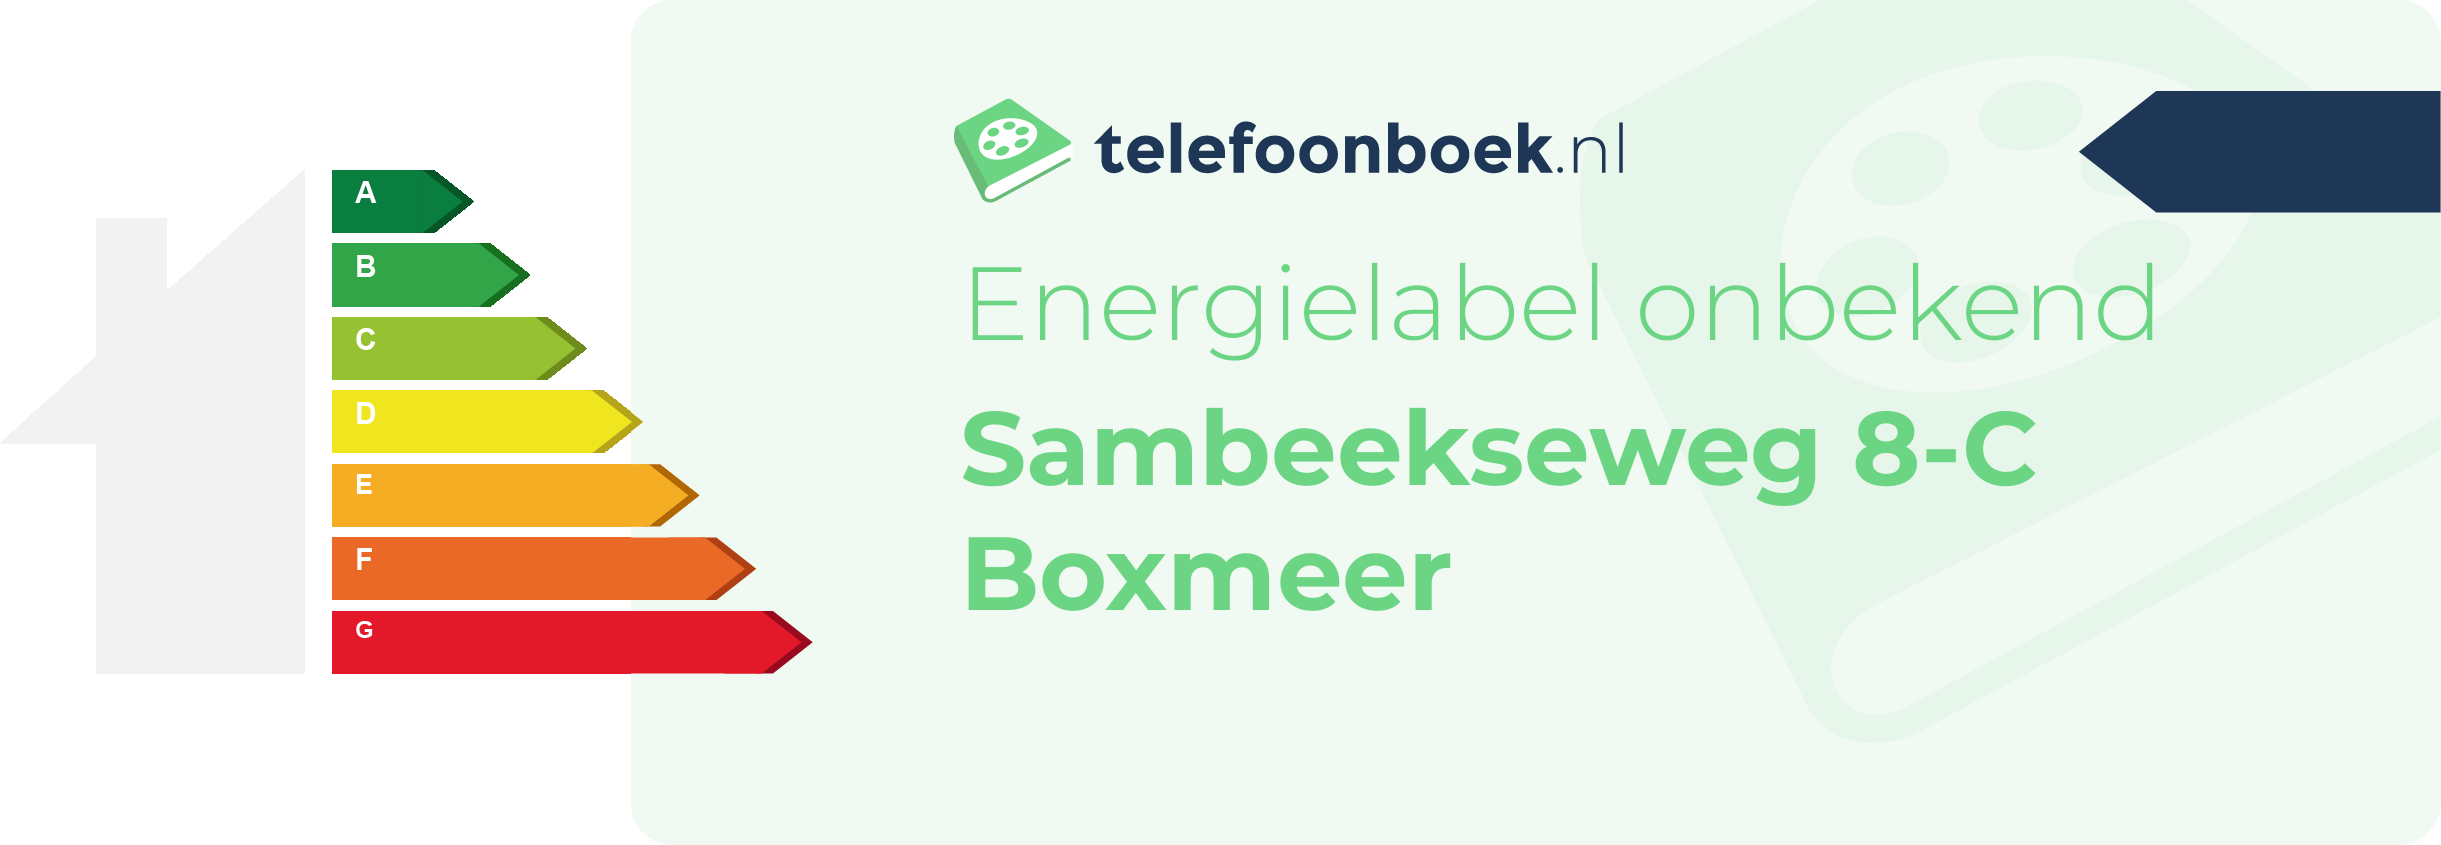 Energielabel Sambeekseweg 8-C Boxmeer